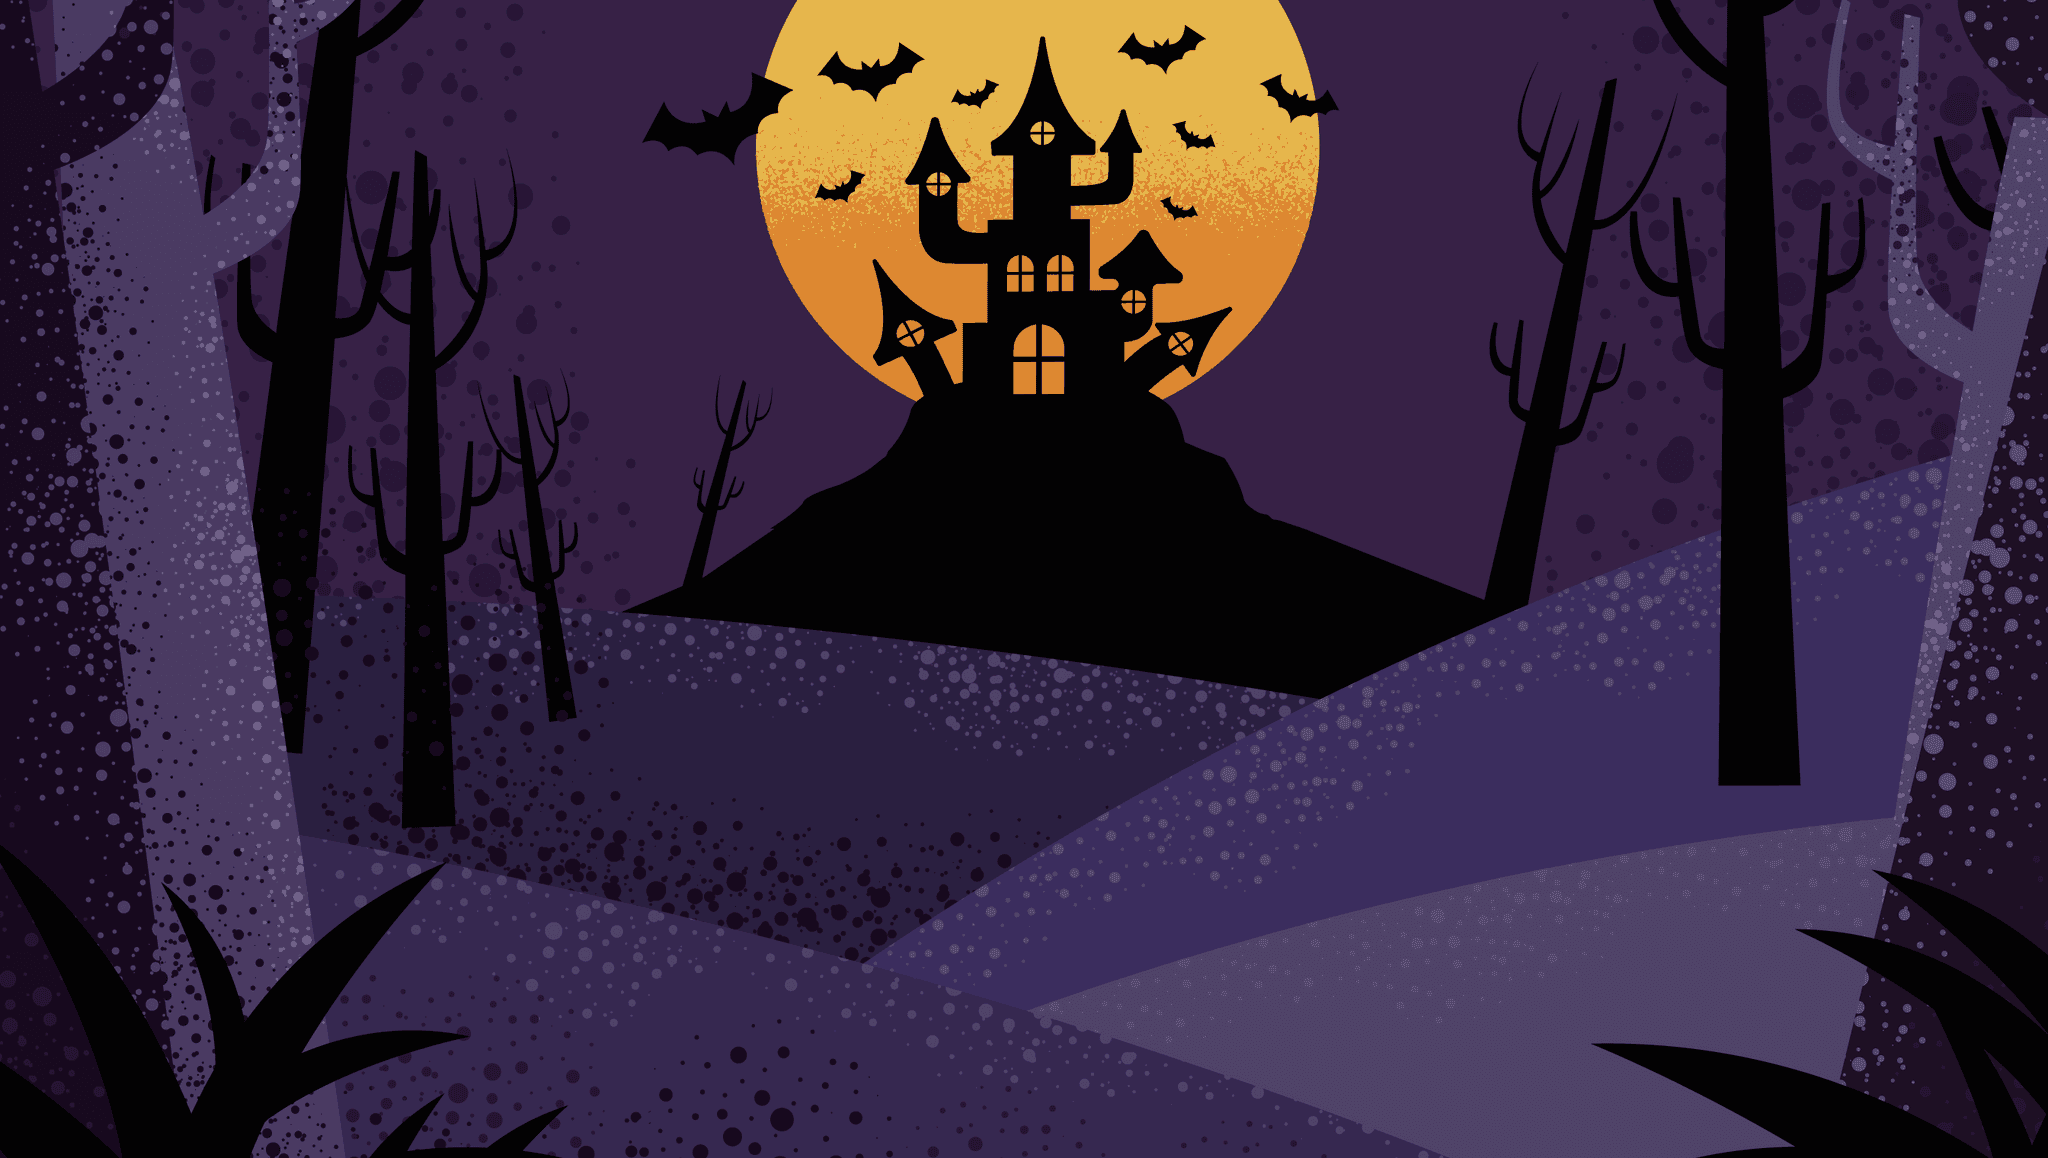 A Spooky Scene on Halloween!